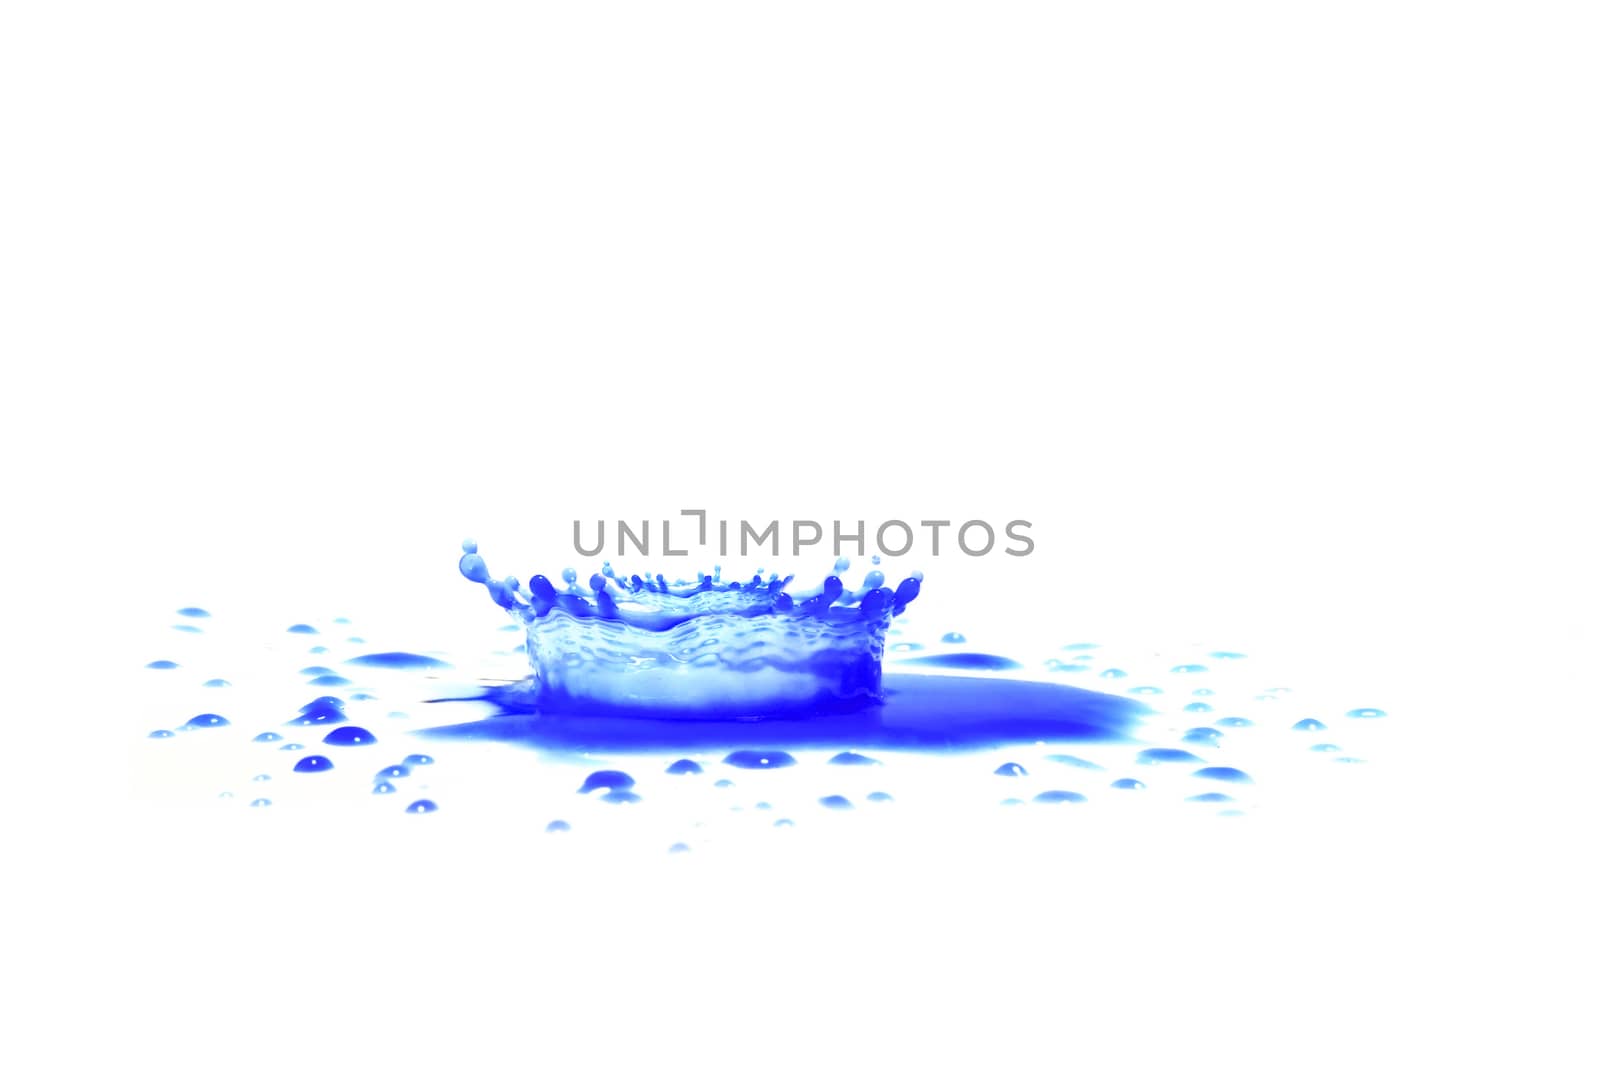 Blue paint splashing by wyoosumran